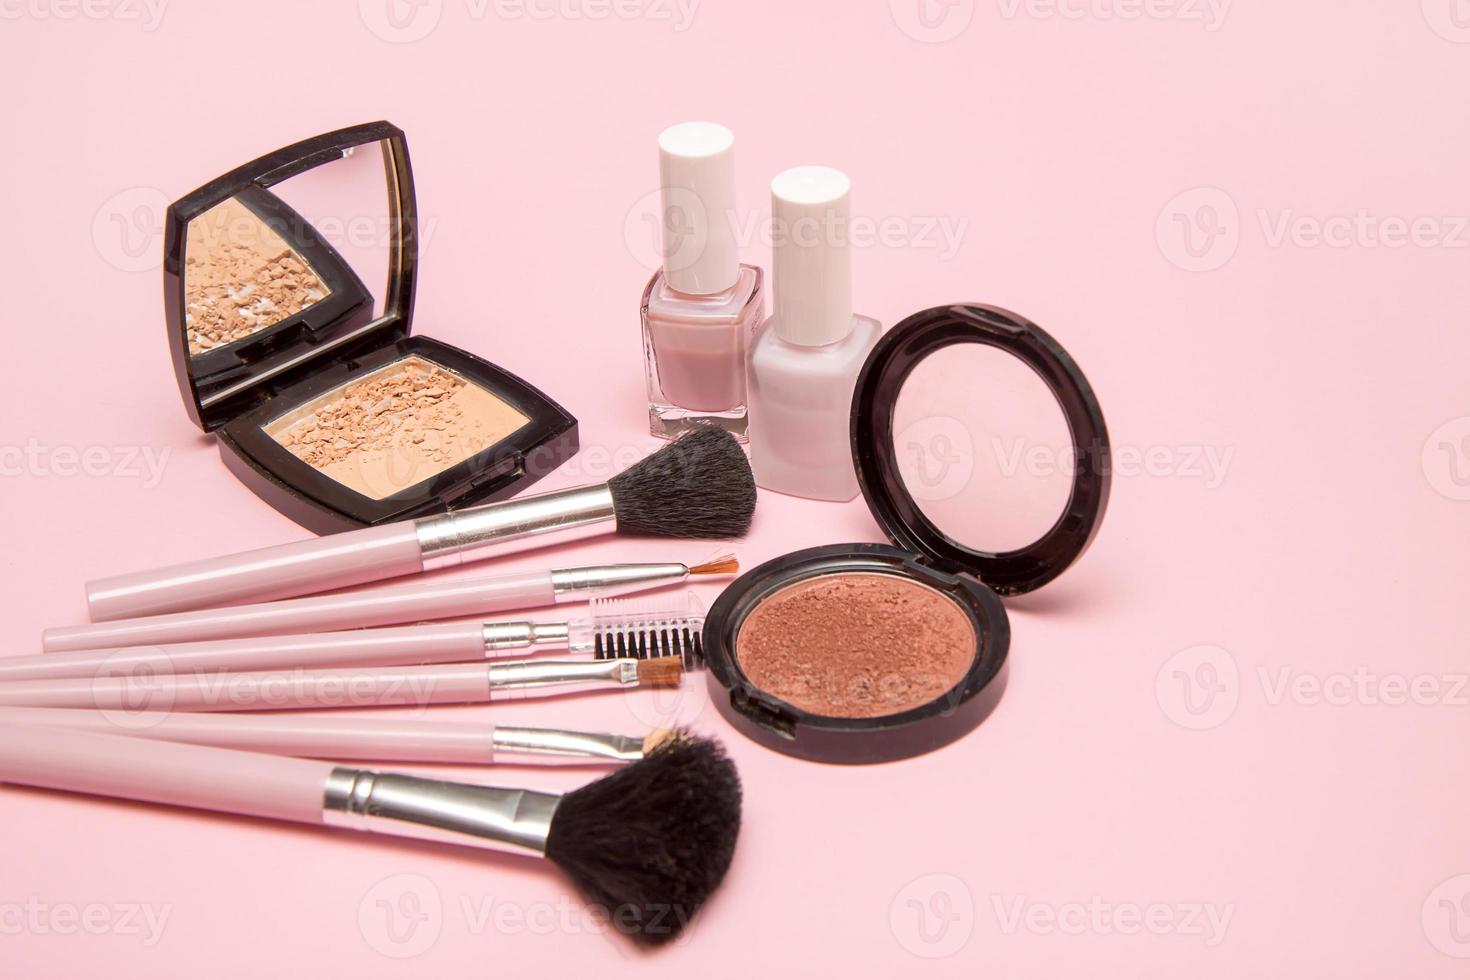 Make-up-Pinsel, Puder, Rouge, Nagellack auf rosafarbenem Hintergrund, das Konzept von allem für Make-up, kosmetische Accessoires foto